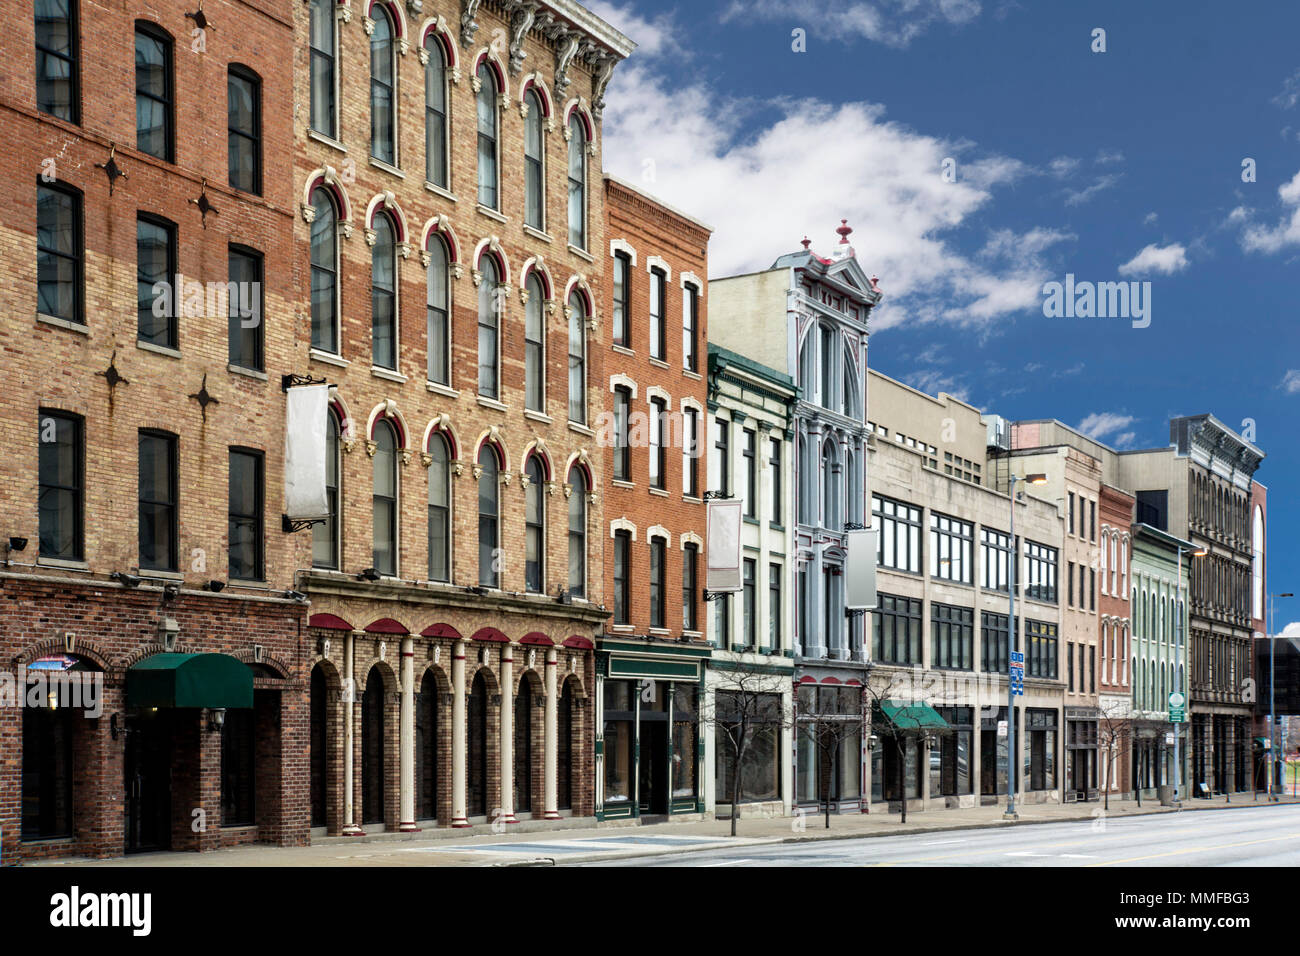 Ein Foto von einem typischen kleinen Stadt Main Street in den Vereinigten Staaten von Amerika. Mit alten Backsteinbauten mit Geschäften und Restaurants. Stockfoto